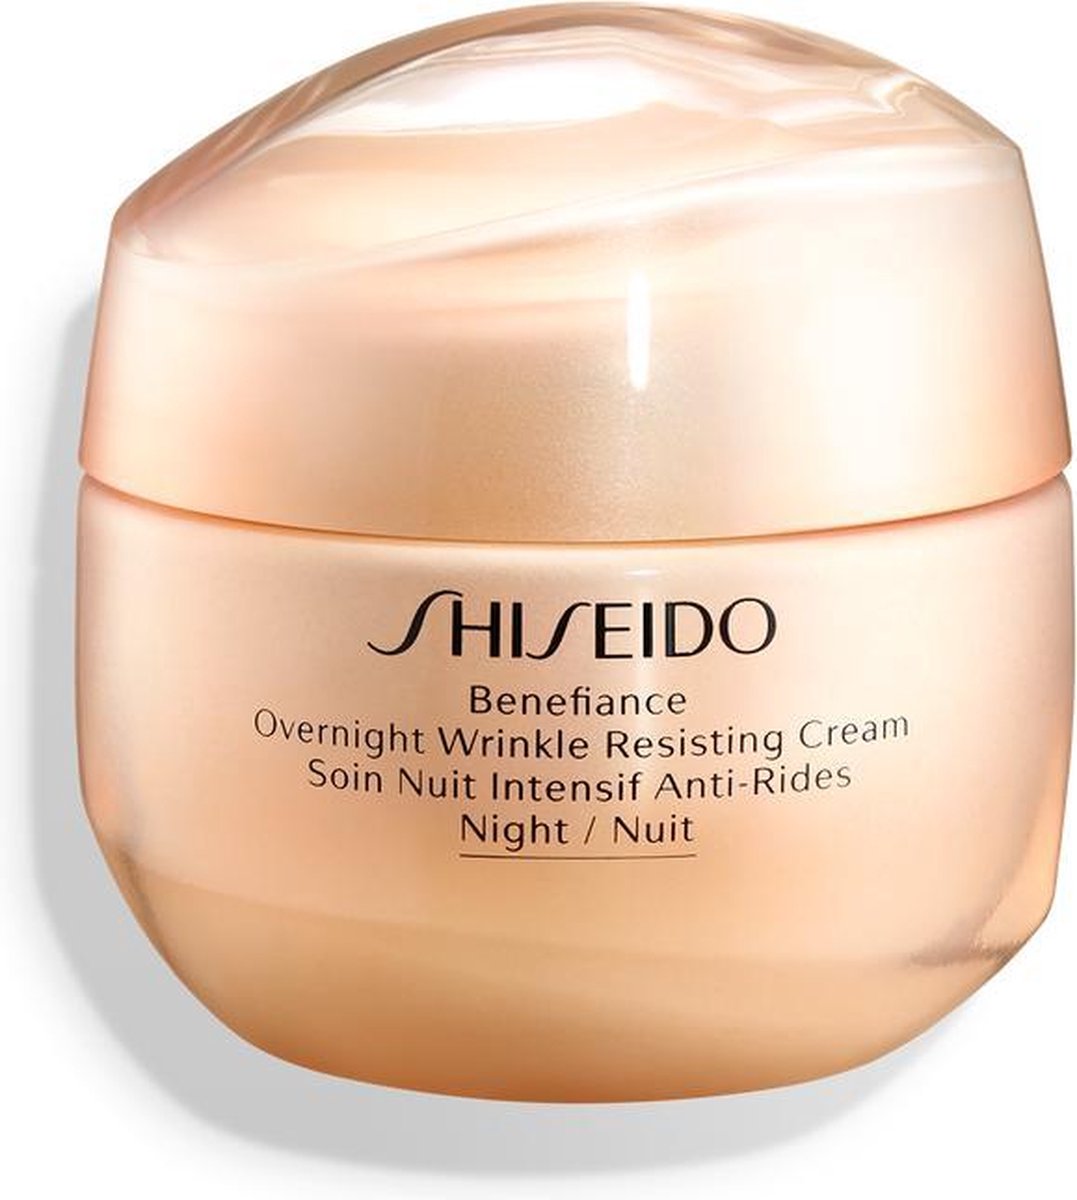 shiseido wrinkle resist 24 night emulsion